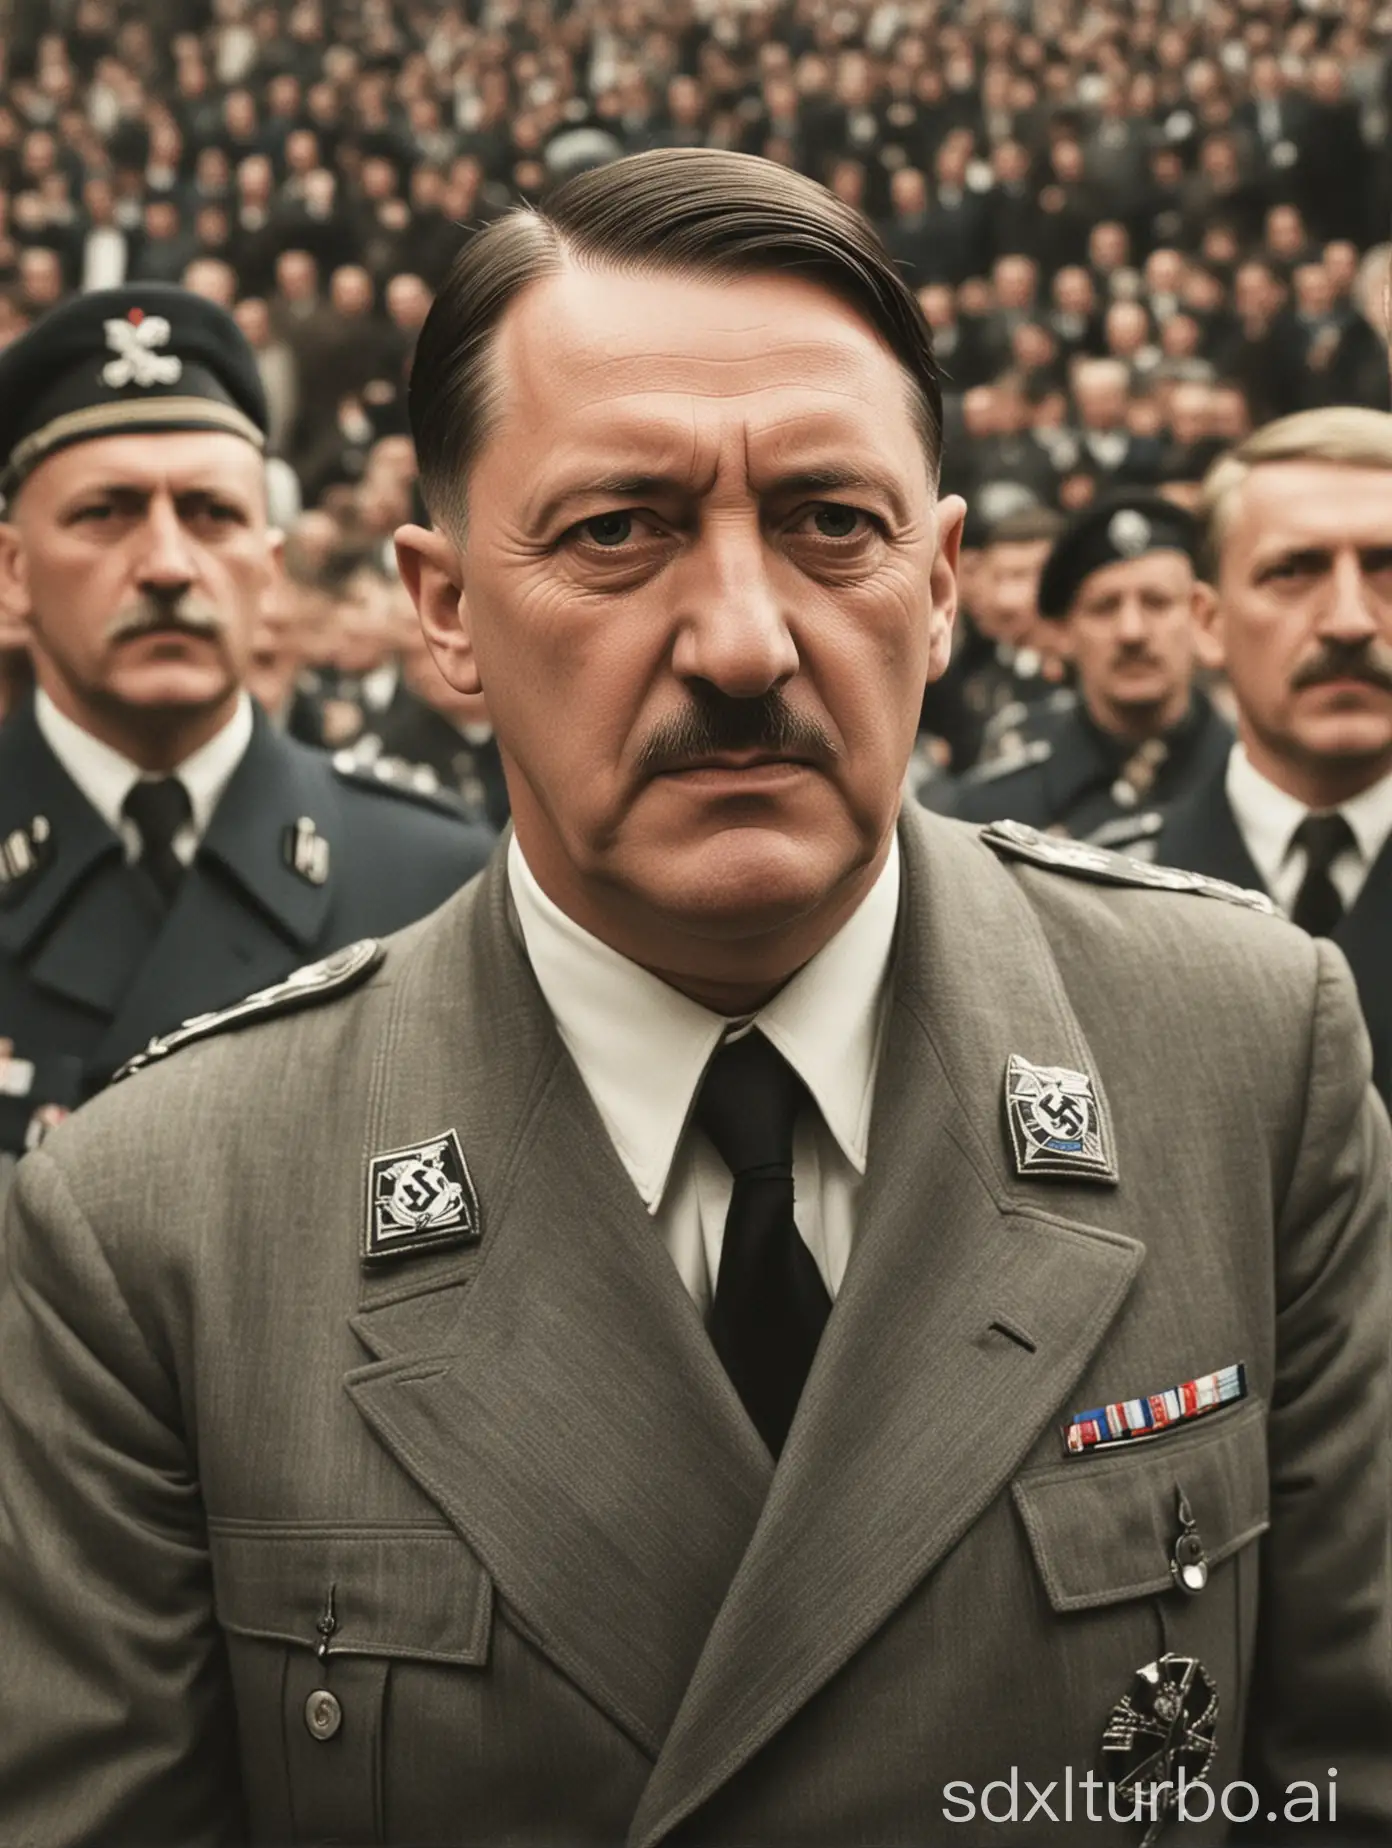 Adolf-Hitler-Attends-AFD-Event